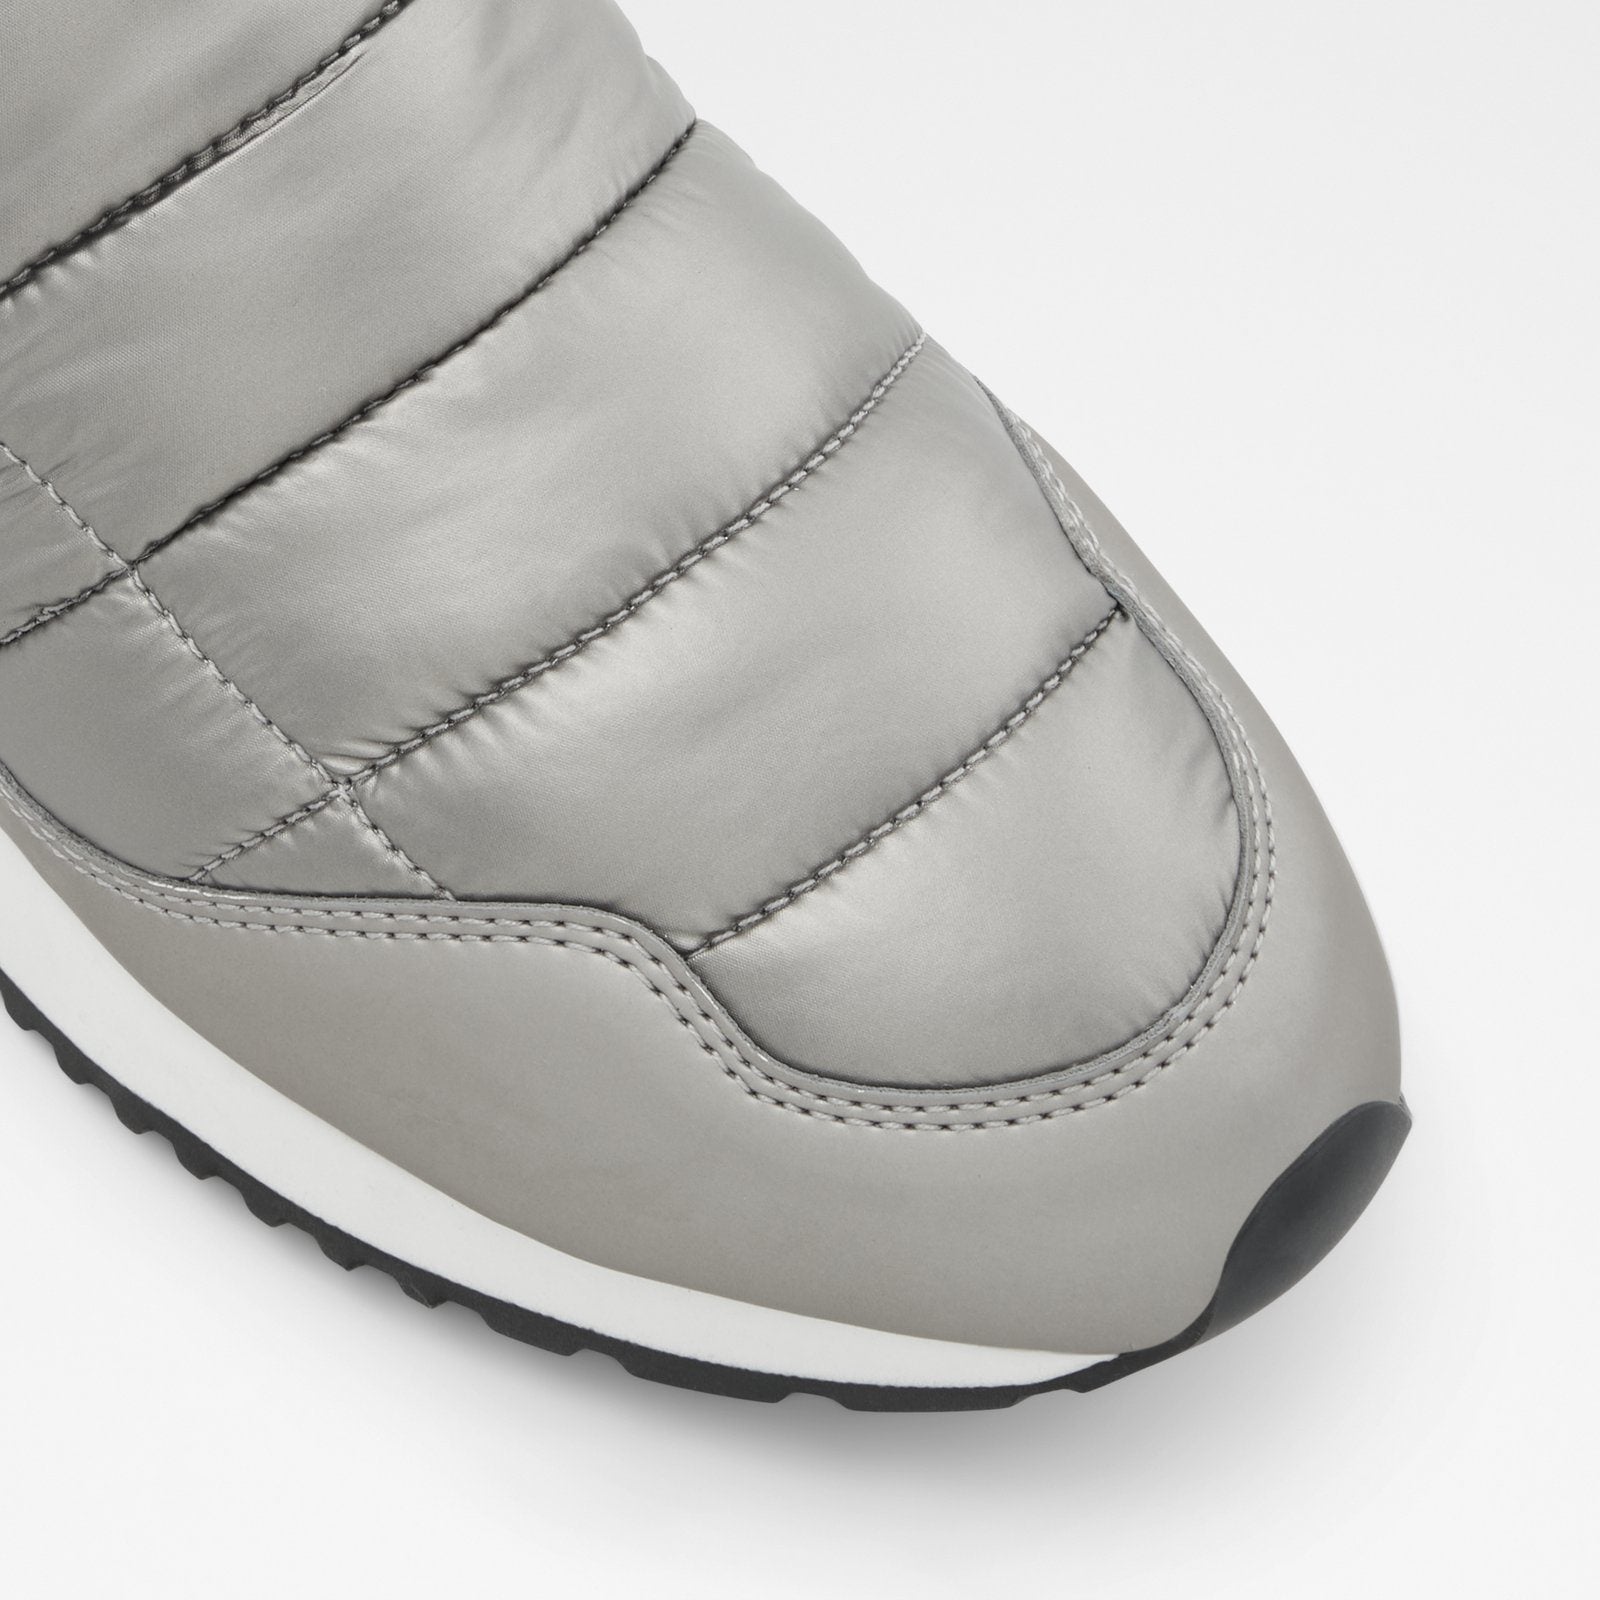 Pufferwalk Women Shoes - Silver - ALDO KSA